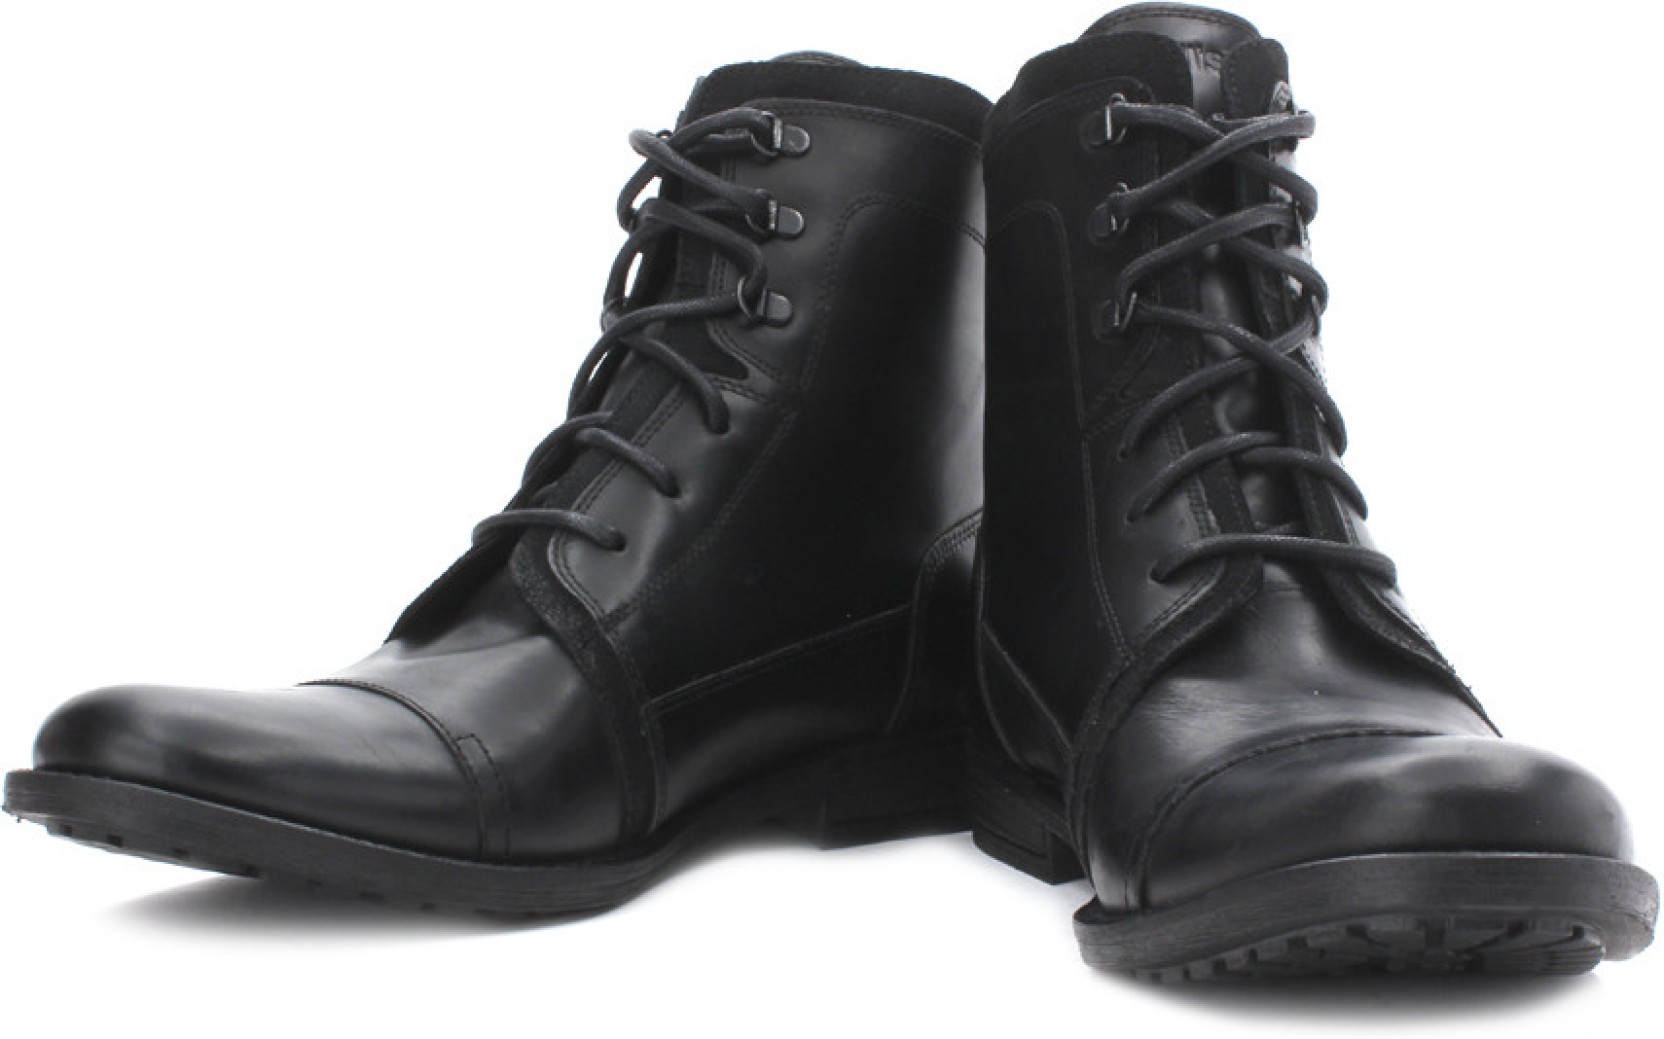 Levi's Ankle Length Boots - Buy Black Color Levi's Ankle Length Boots ...